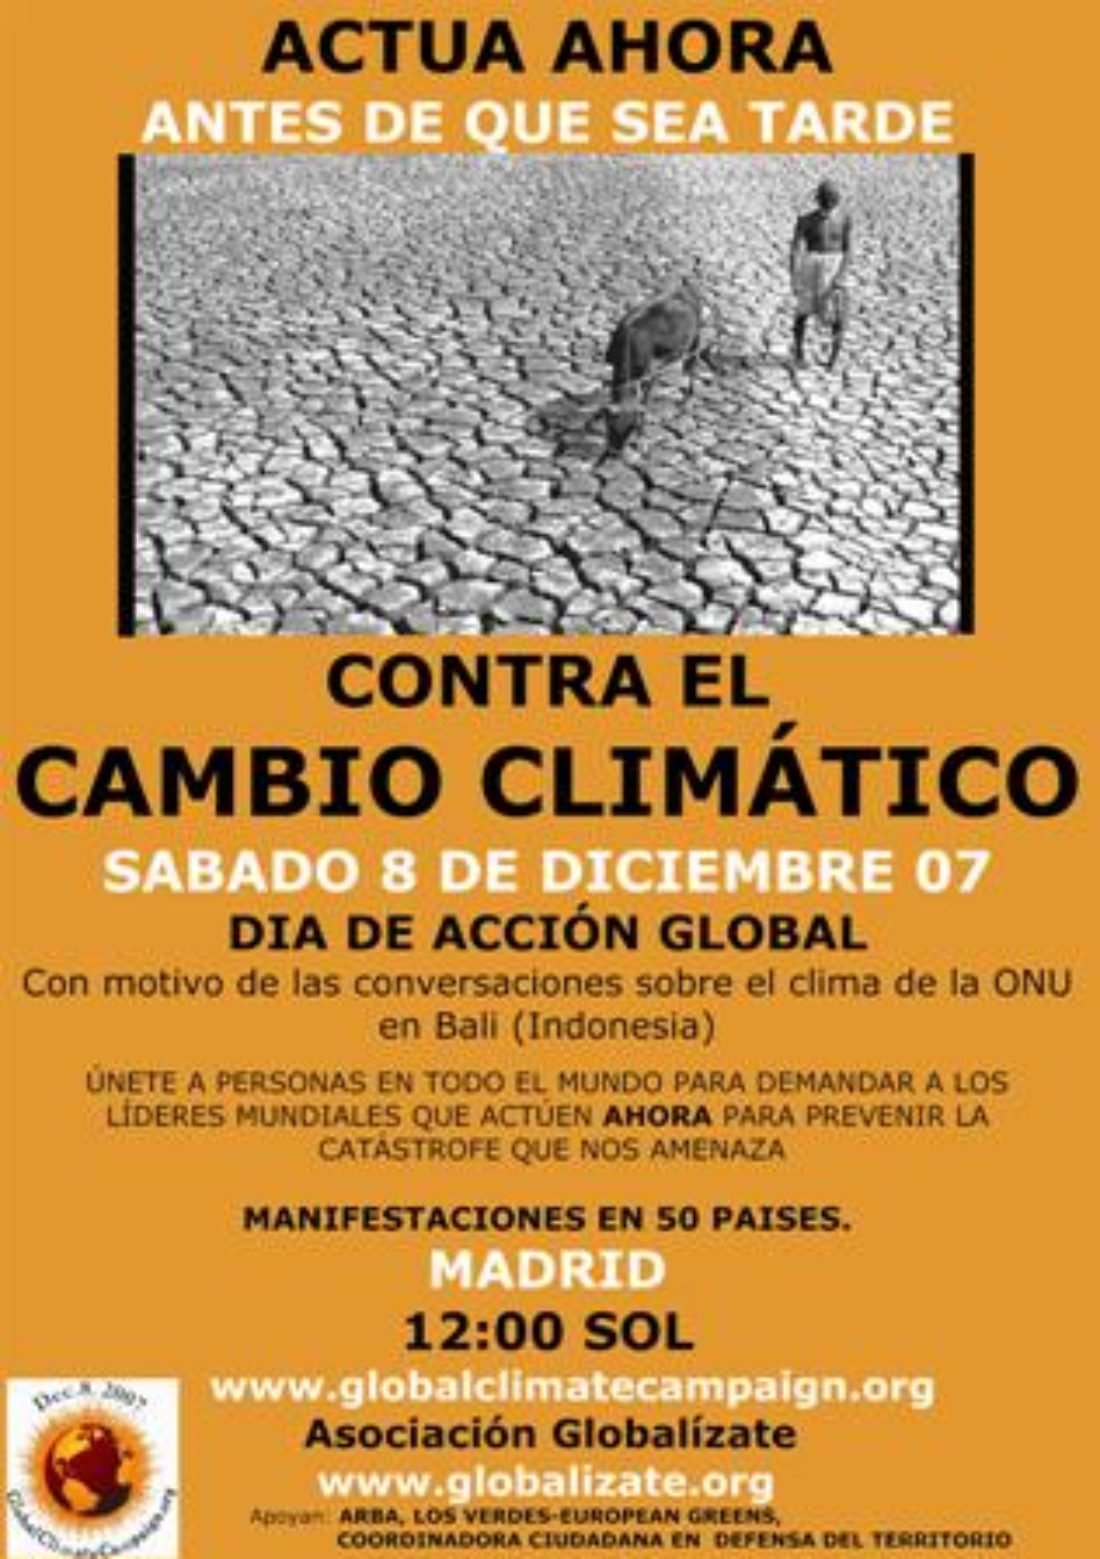 Manifestación en Madrid contra el cambio climático el 8 de diciembre, a las 12 horas, en la Puerta del Sol